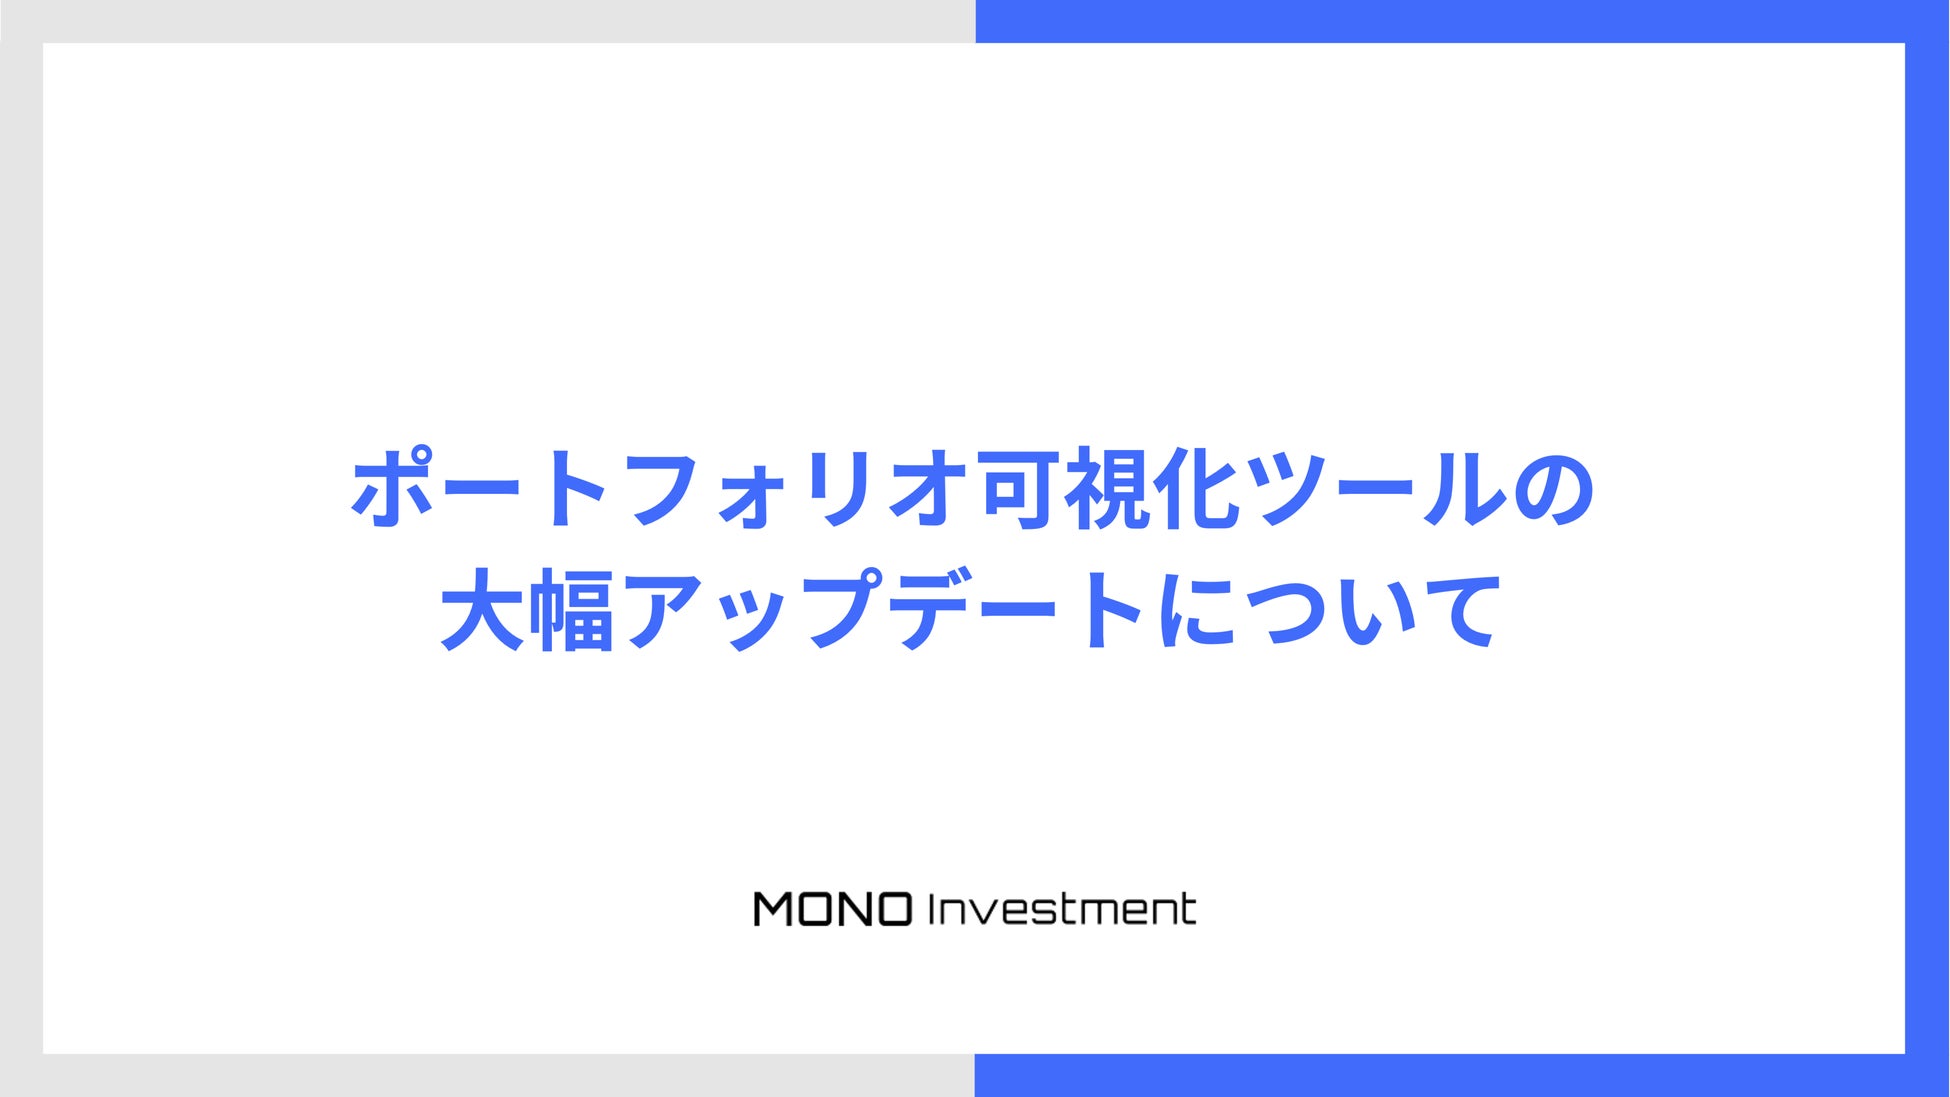 資産運用コンサルティング事業者向けCRMを提供するMONO Investmentが、ポートフォリオ可視化ツールを大幅アップデート